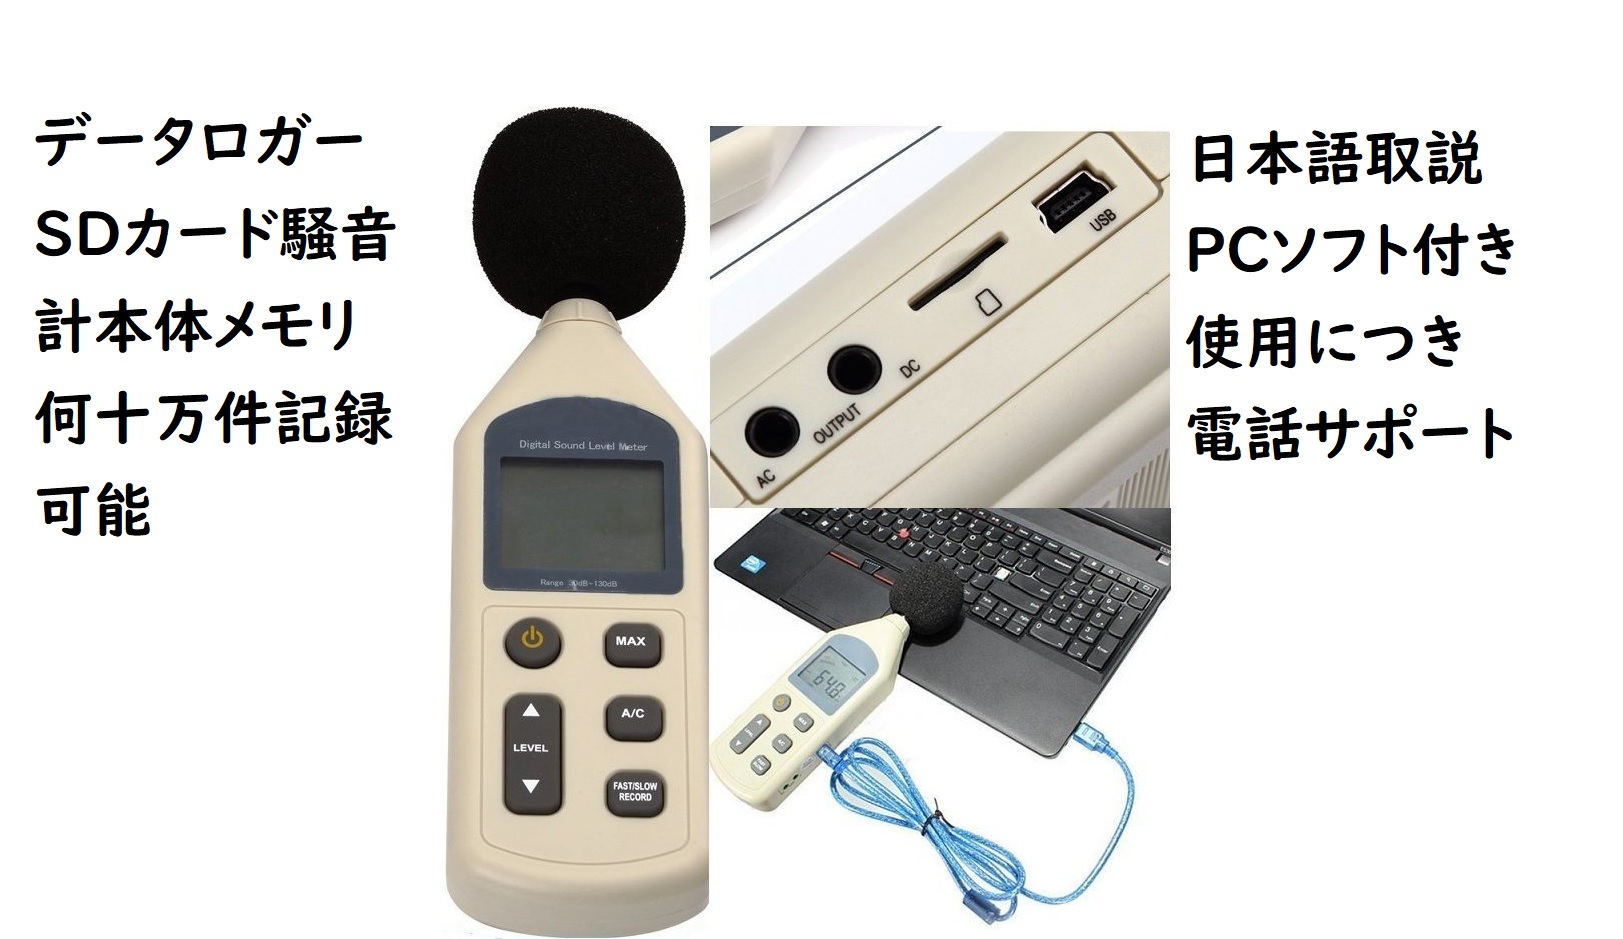 ベスト商品 限定本体メモリ何十万件 PCソフト付 SDカード付騒音計日本